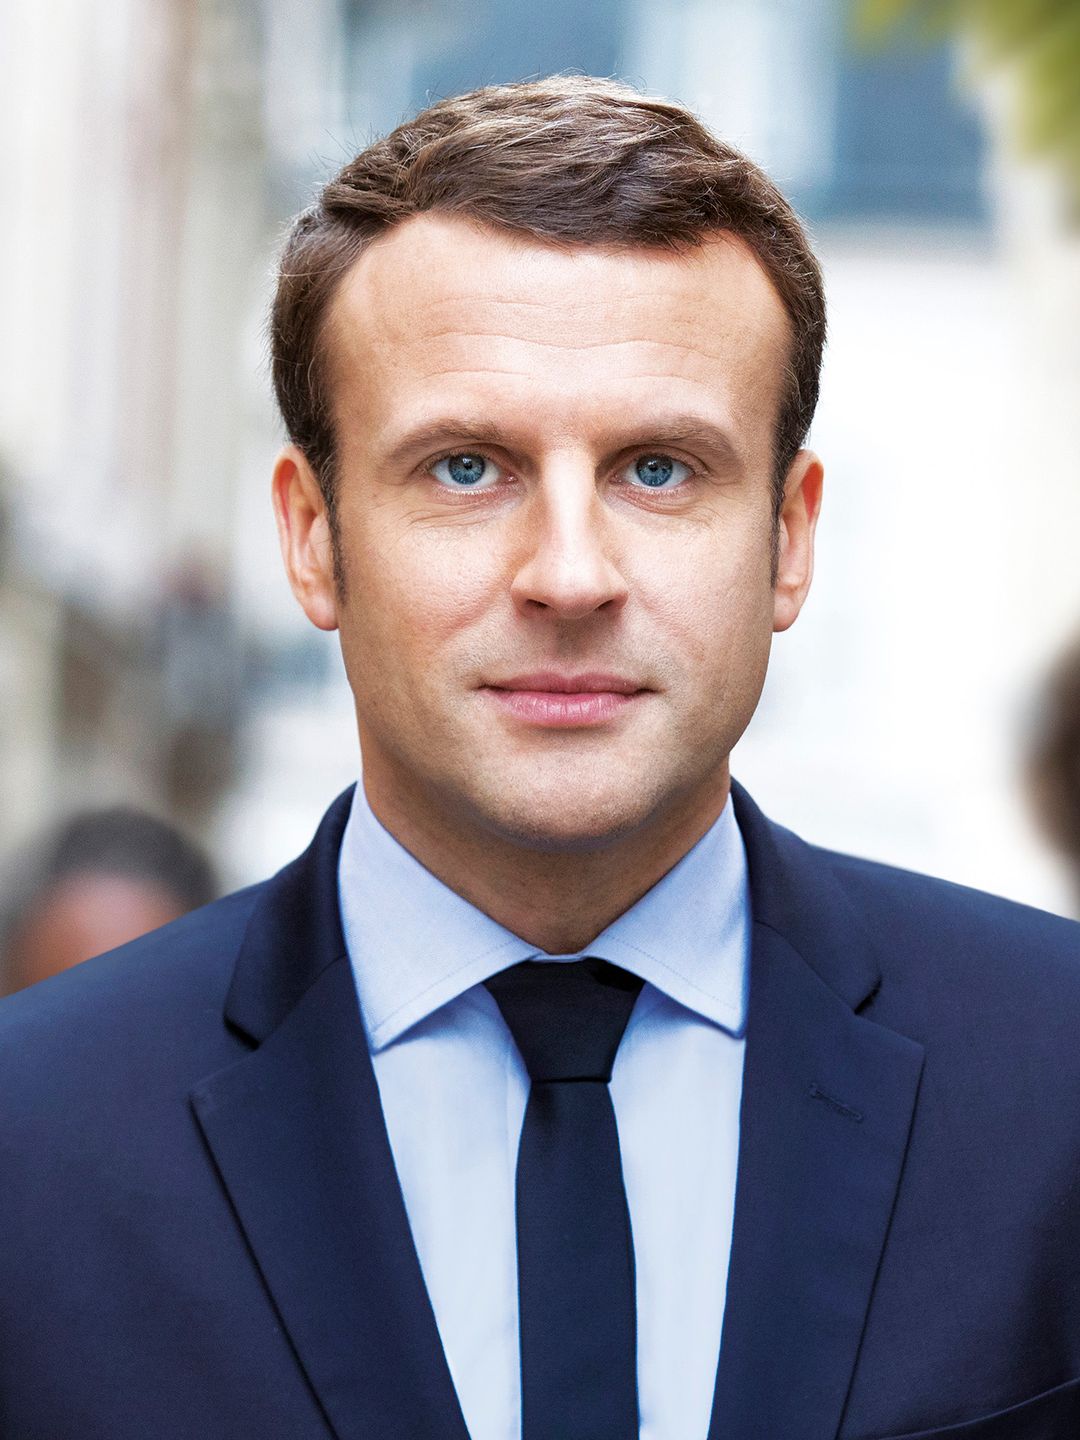 Emmanuel Macron childhood pics